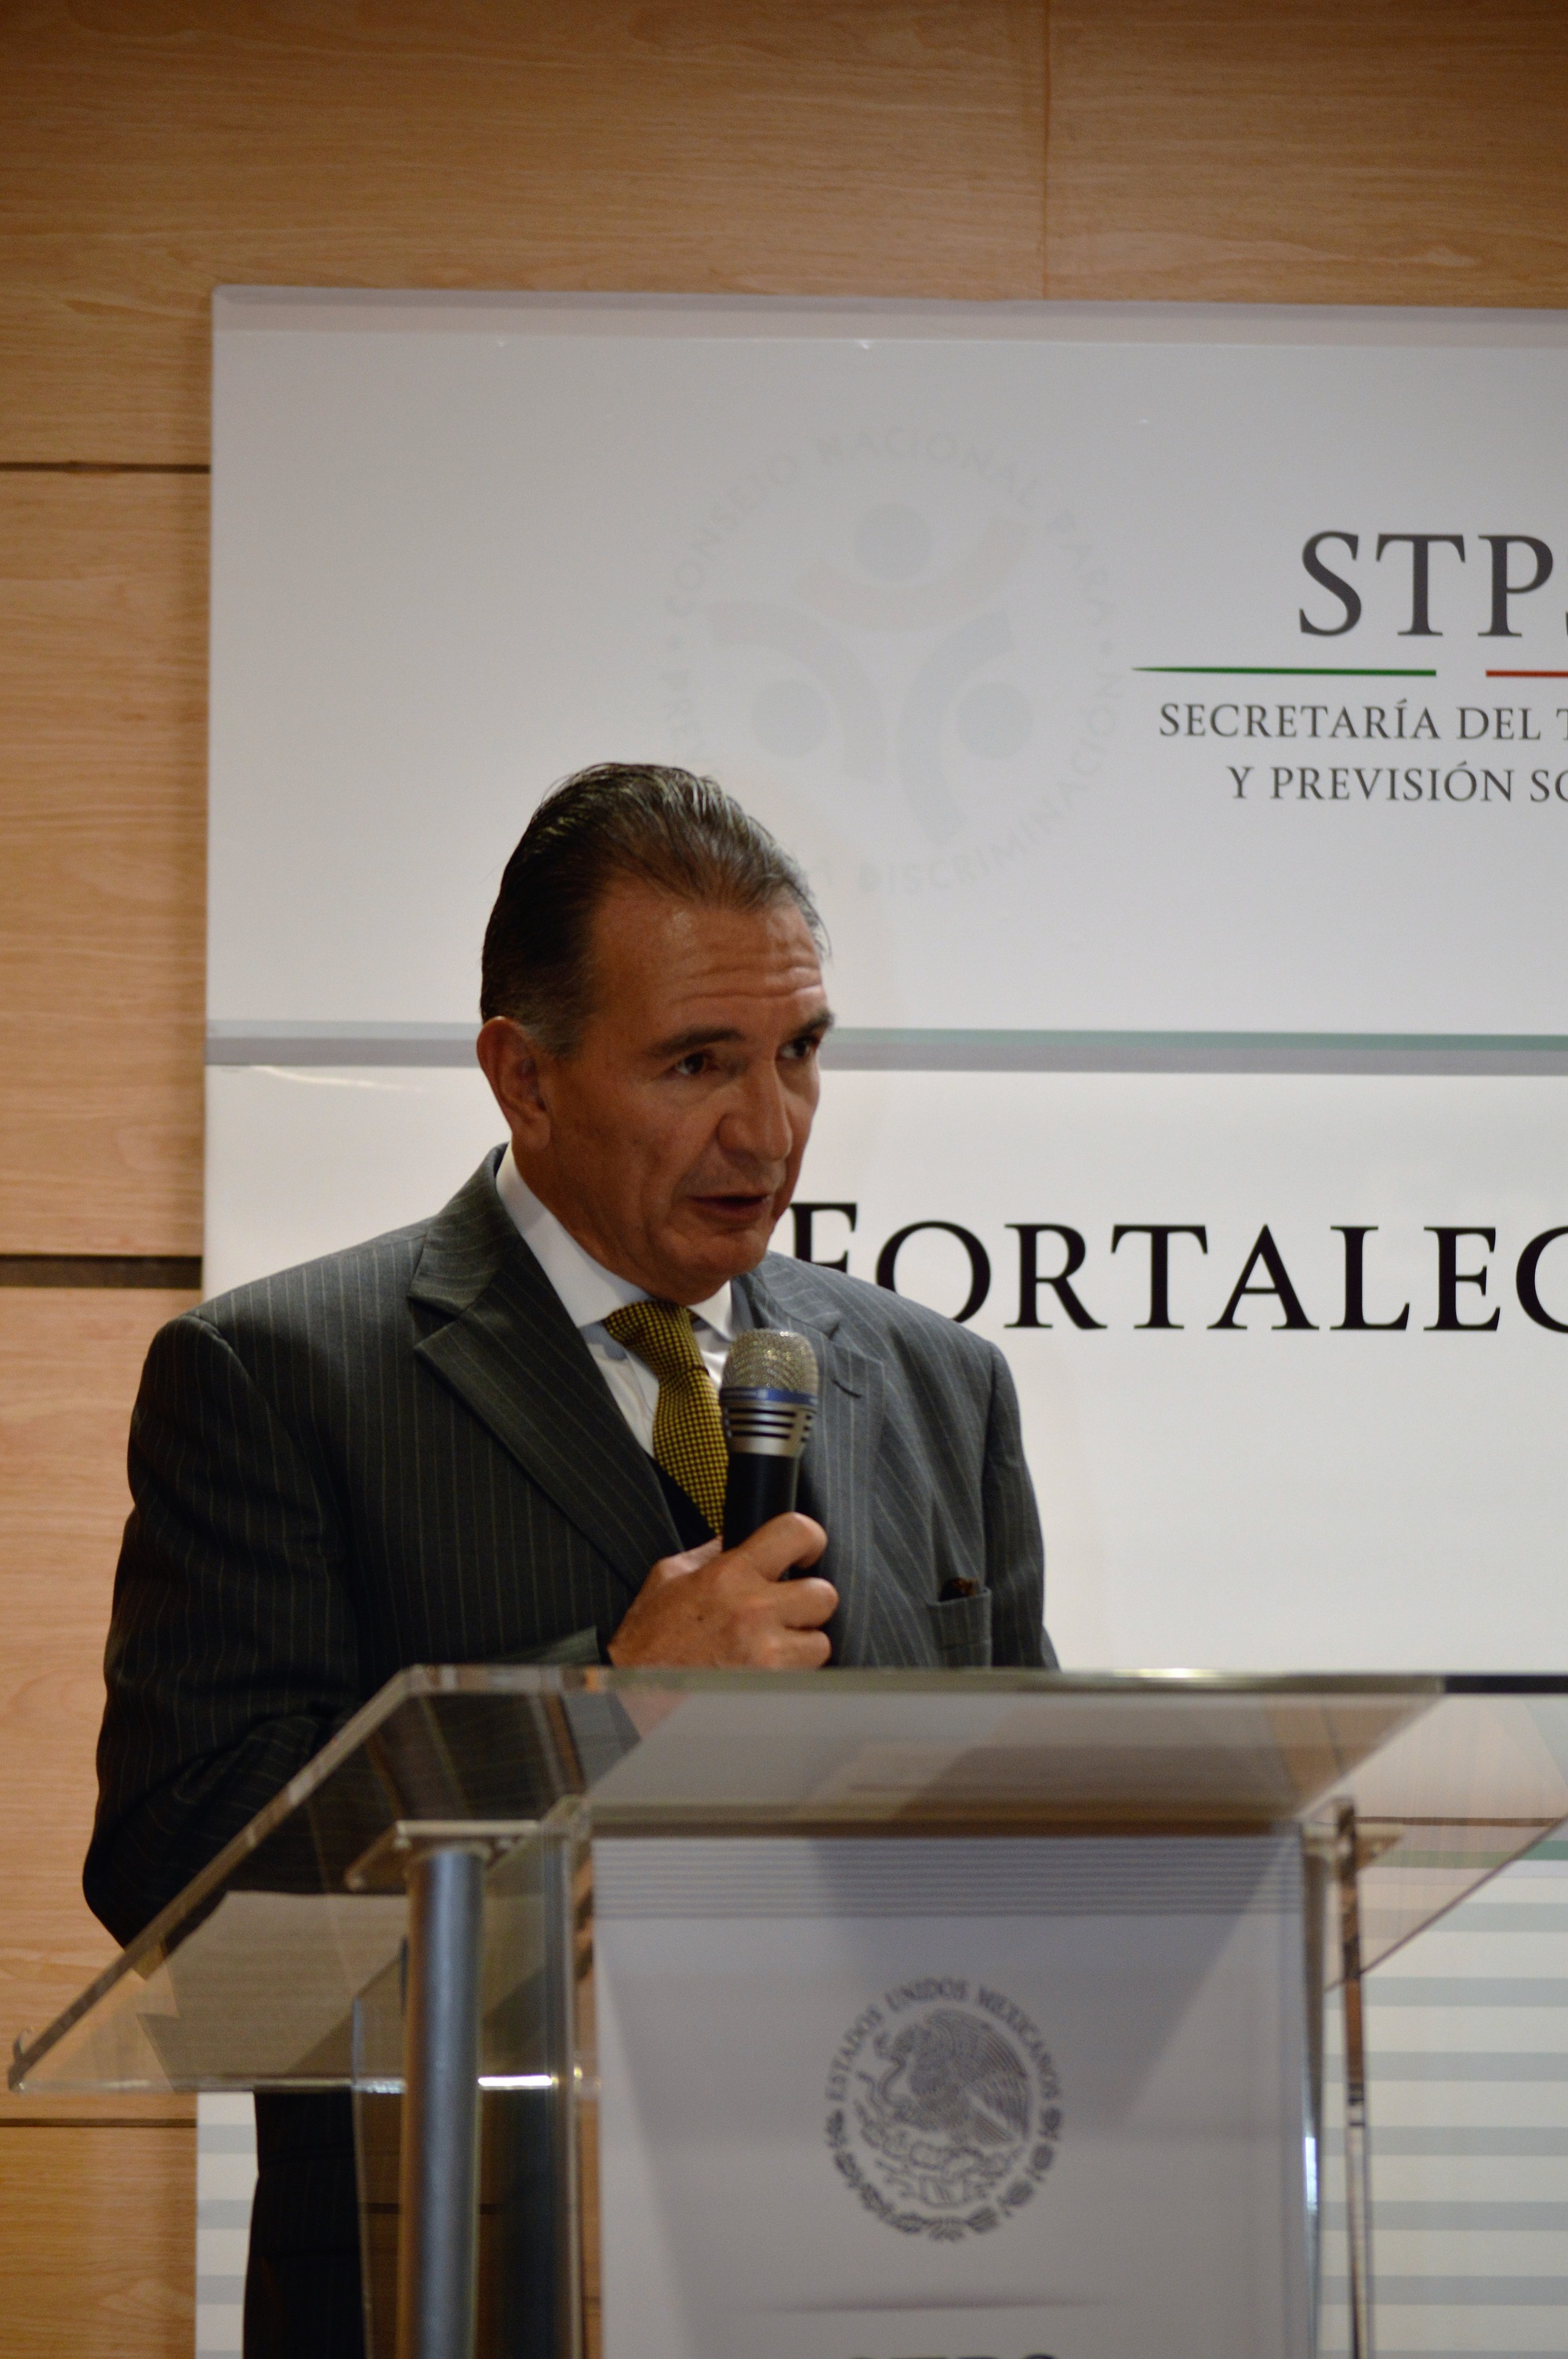  Jorge Gerardo Aguilar Montaño en la ceremonia de inauguración de la “Jornada para el Fortalecimiento de la Actuación del Personal de Inspección del Trabajo”.